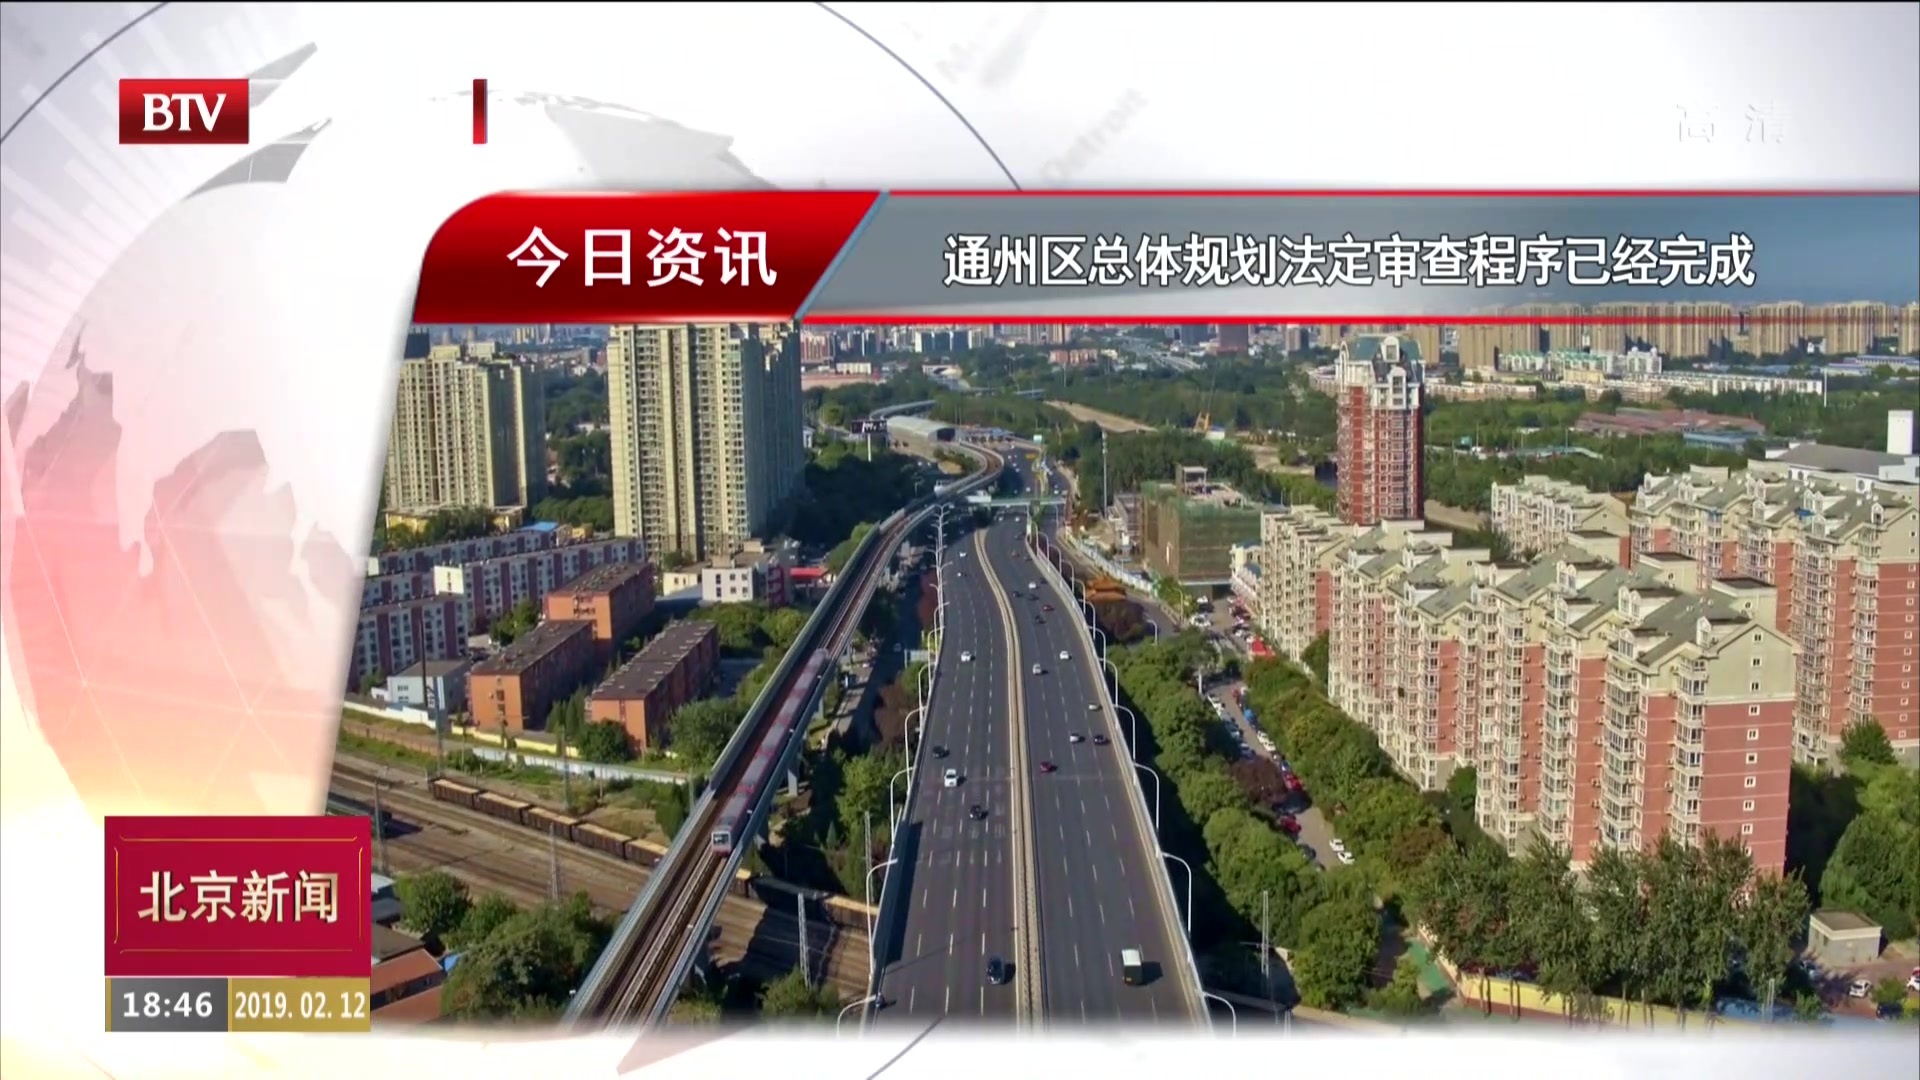 北京通州区总体规划法定审查程序已经完成